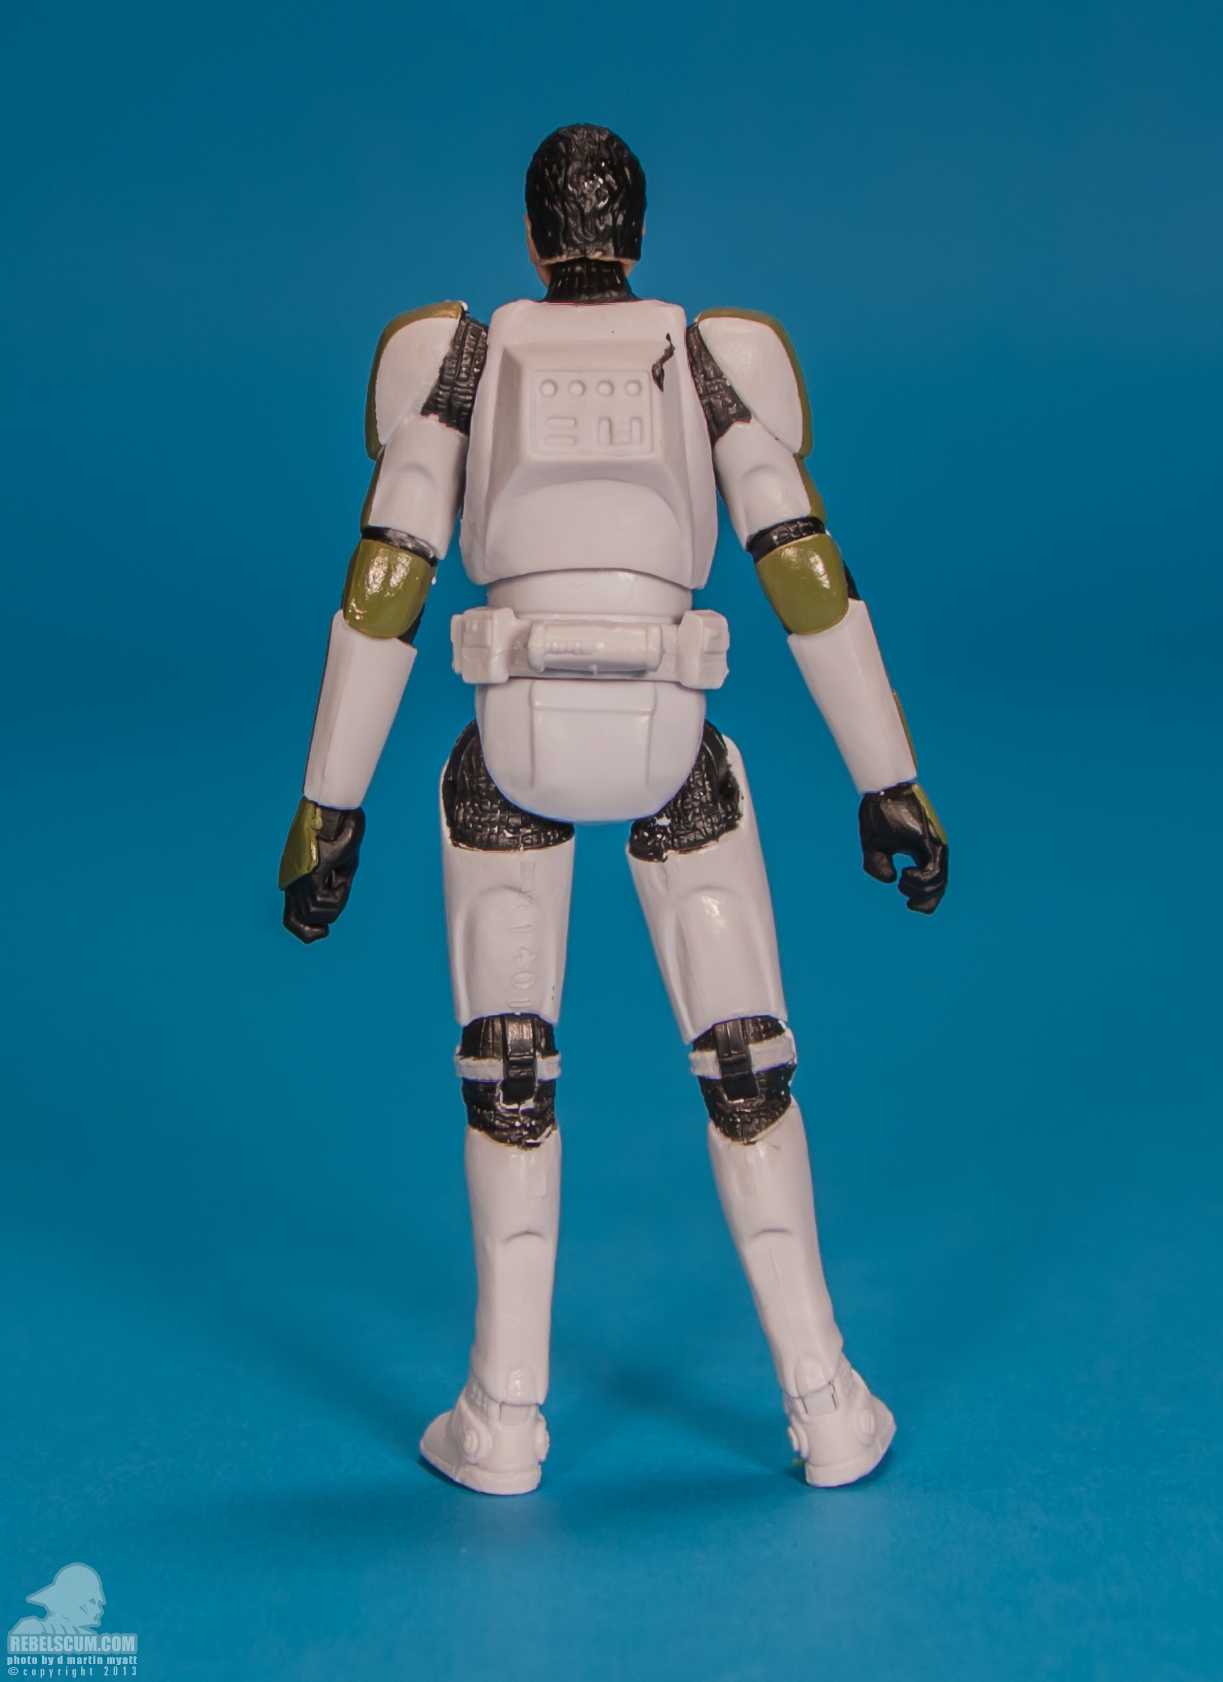 The-Black-Series-Star-Wars-Hasbro-02-Clone-Trooper-Sergeant-008.jpg